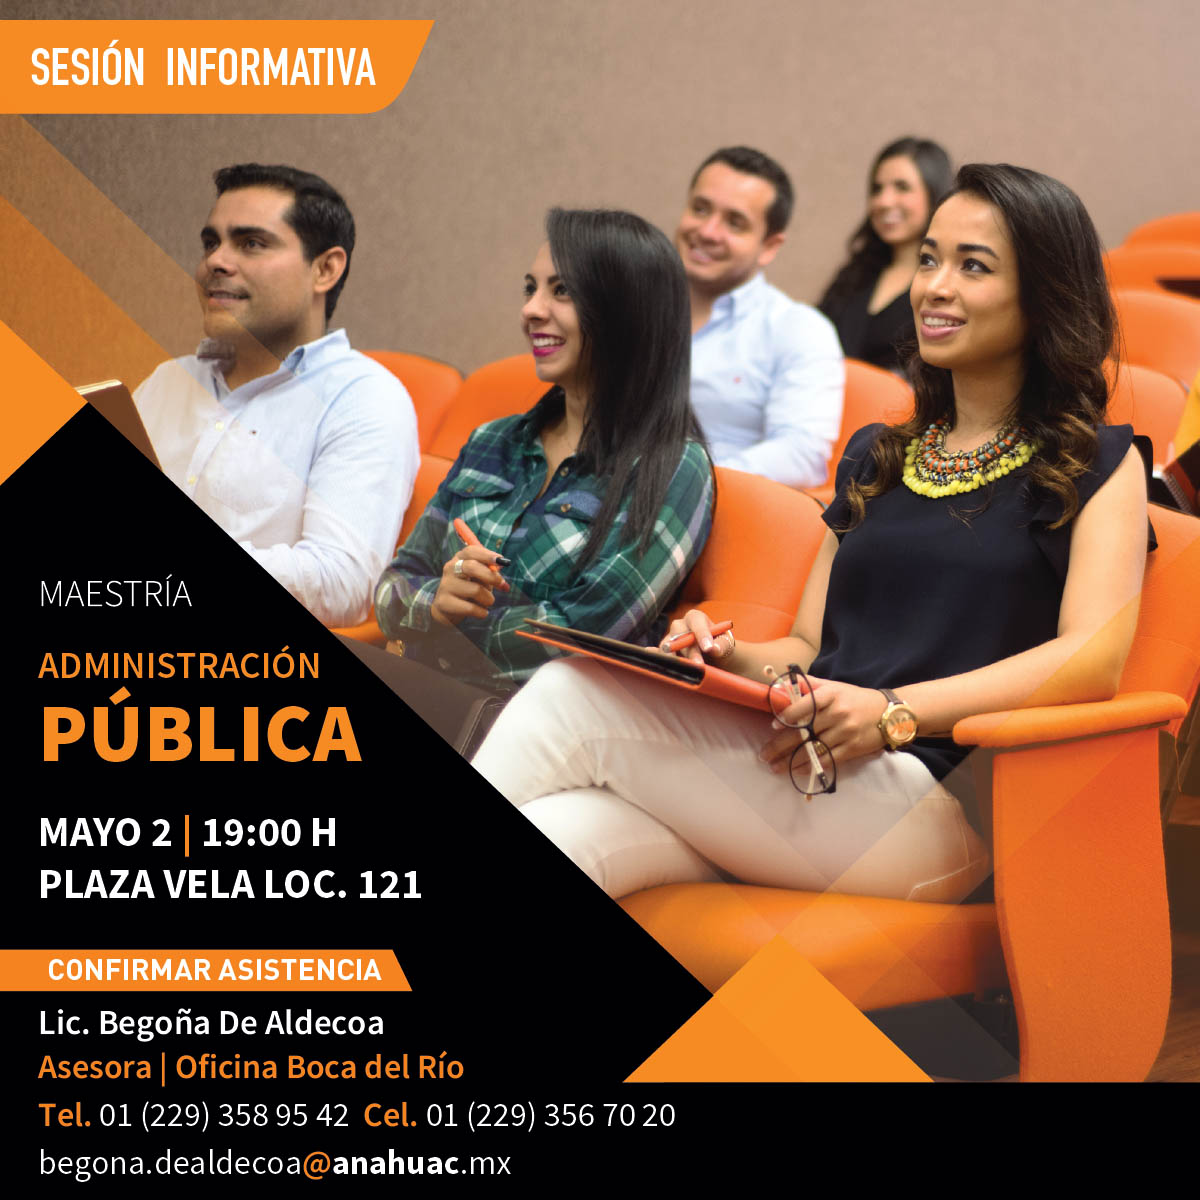 Maestría en Administración Pública: Sesión Informativa Veracruz